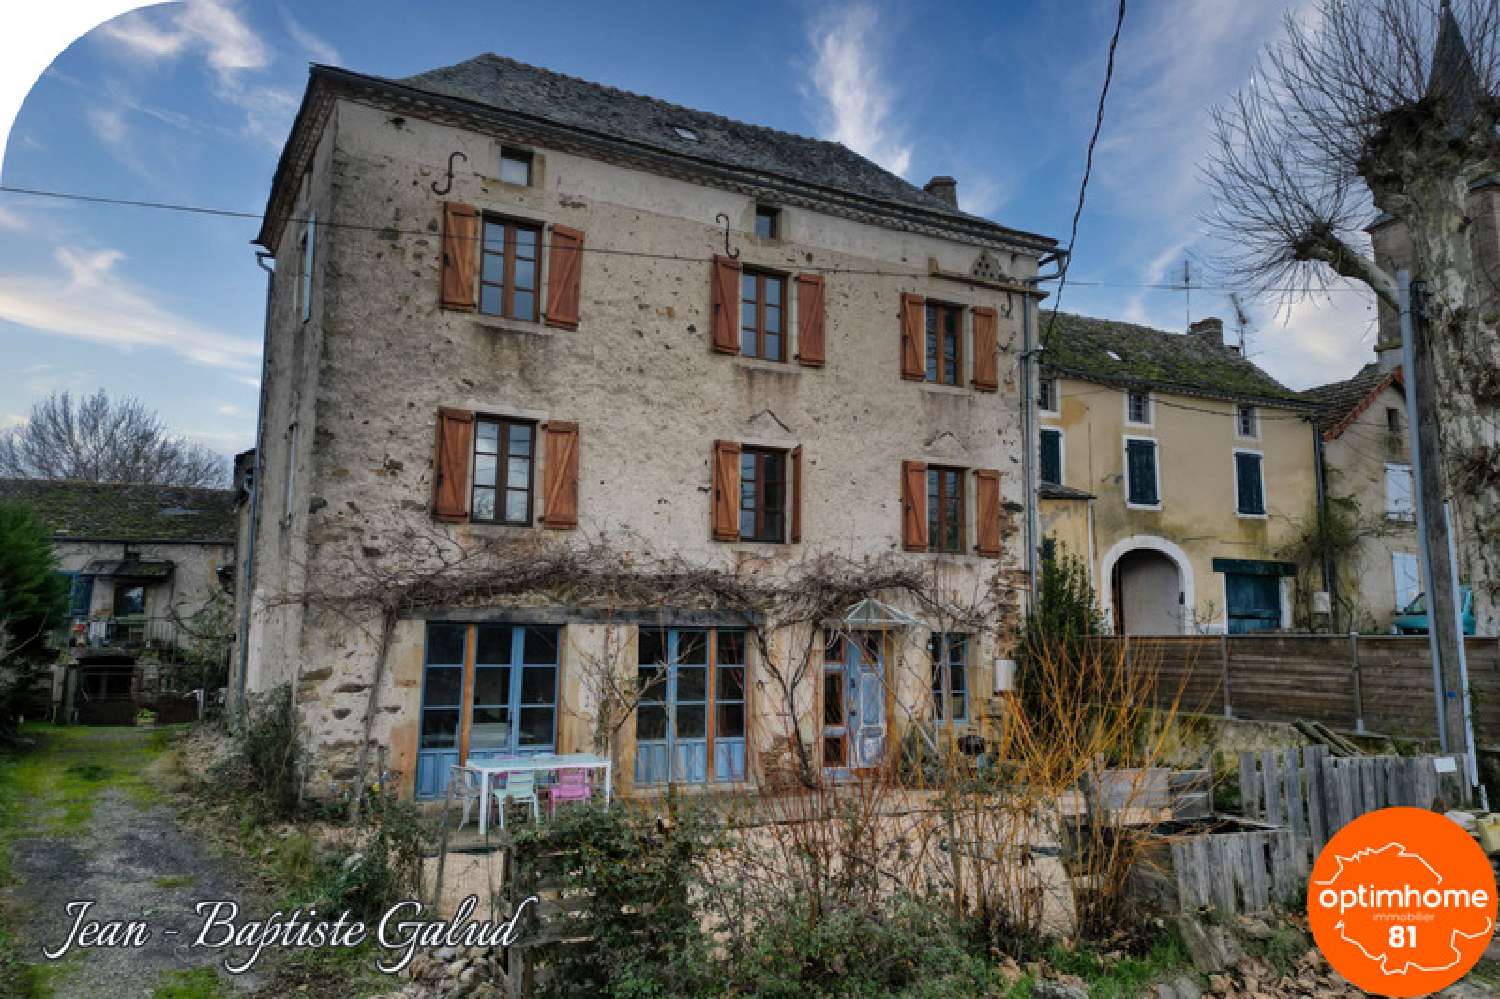  à vendre maison bourgeoise Laguepie Tarn-et-Garonne 1